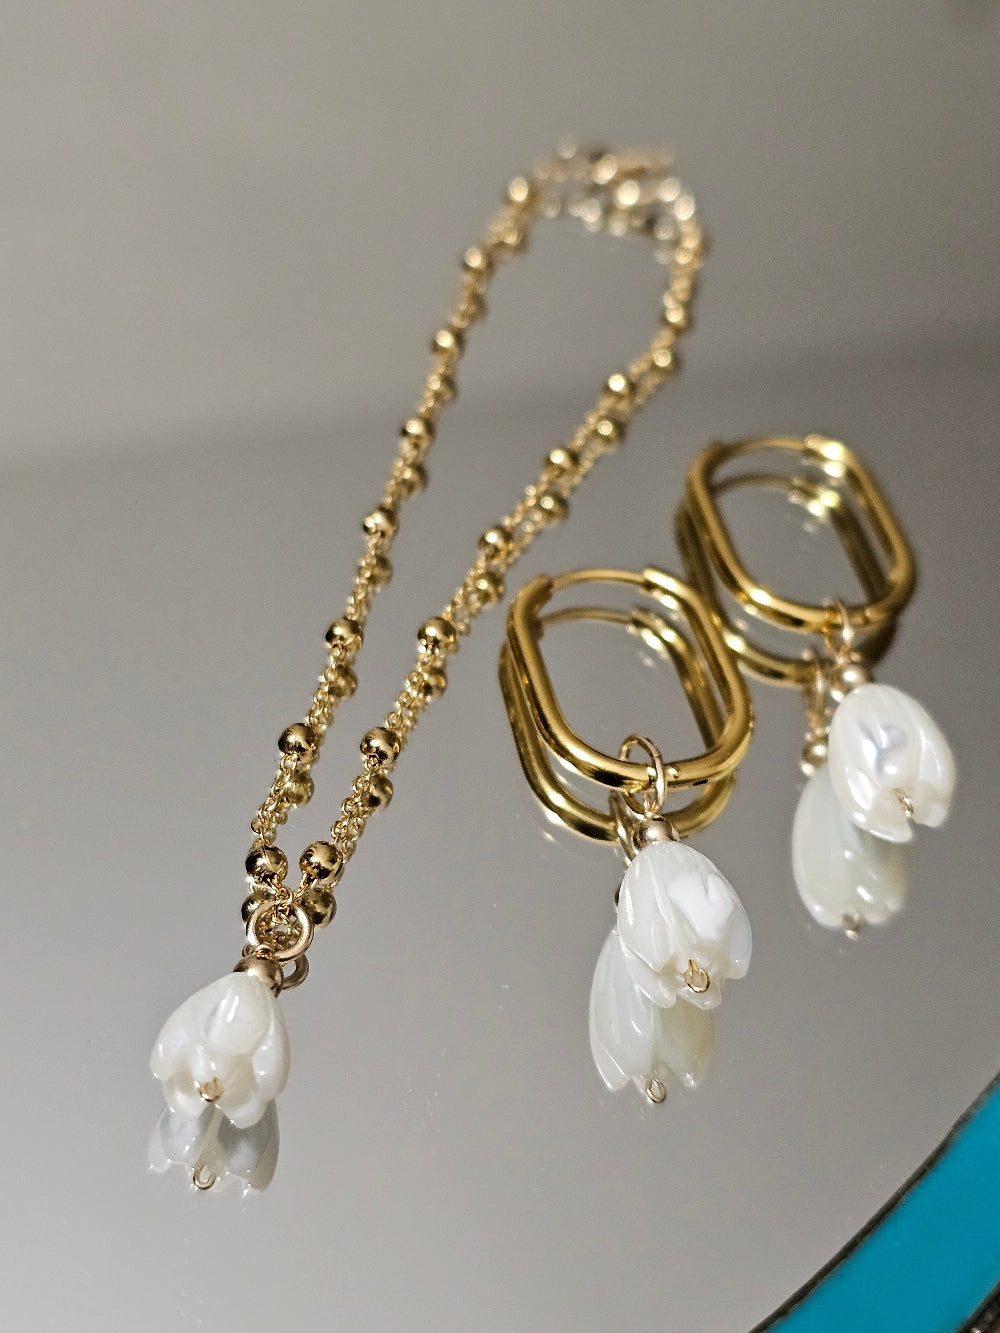 Commande personnalisée Johan D. - Créoles ovales fleurs de nacre et bracelet boules fleur de nacre